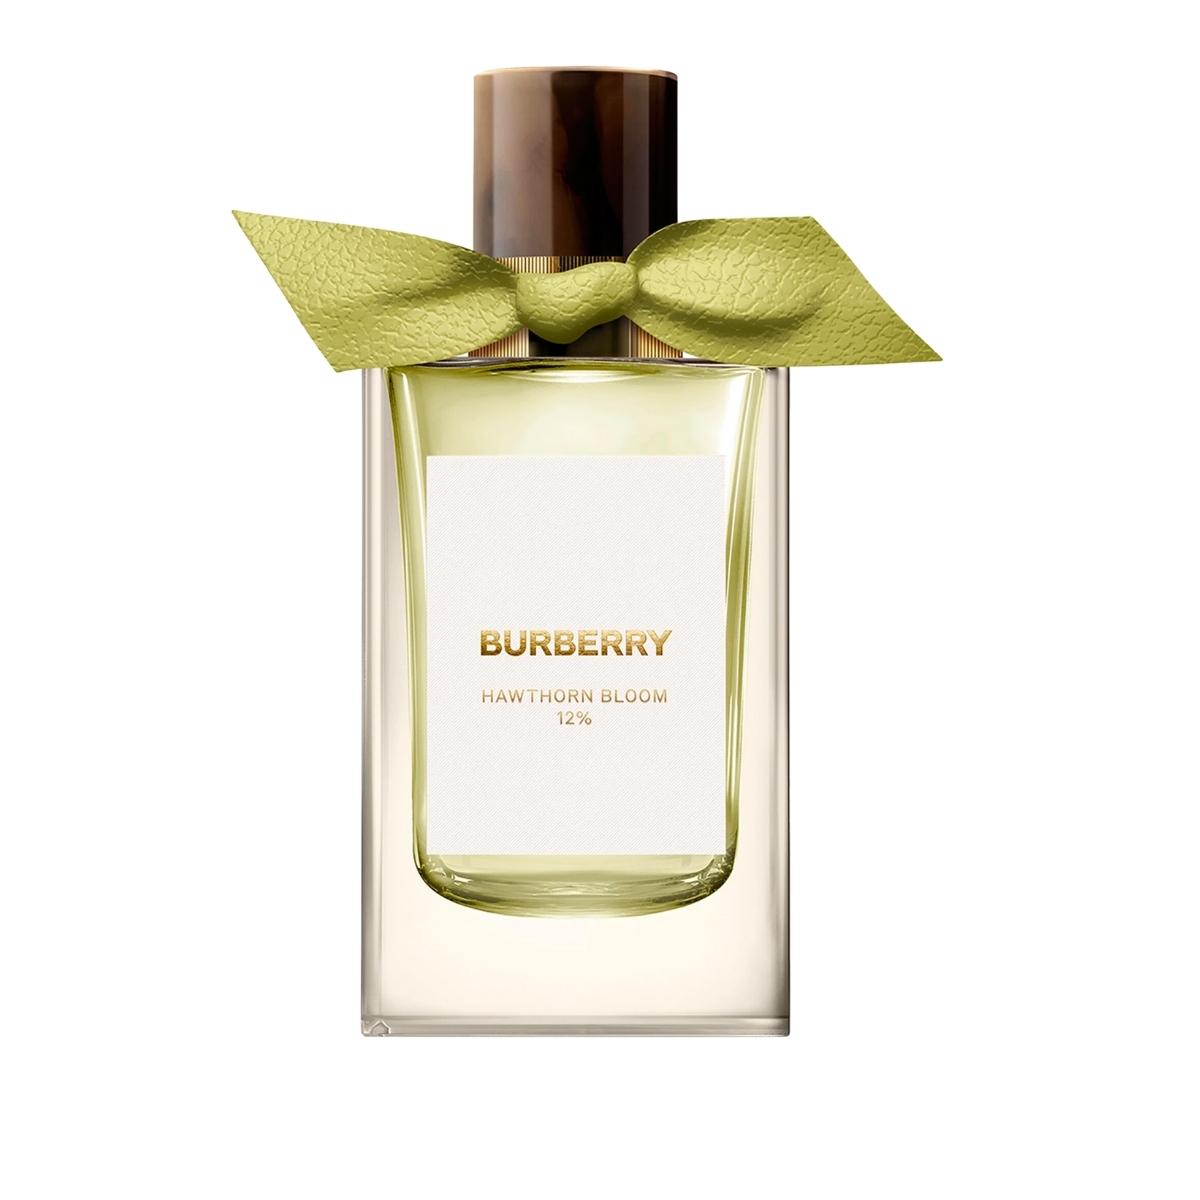 Burberry Hawthorn Bloom 12% Eau de Parfum,